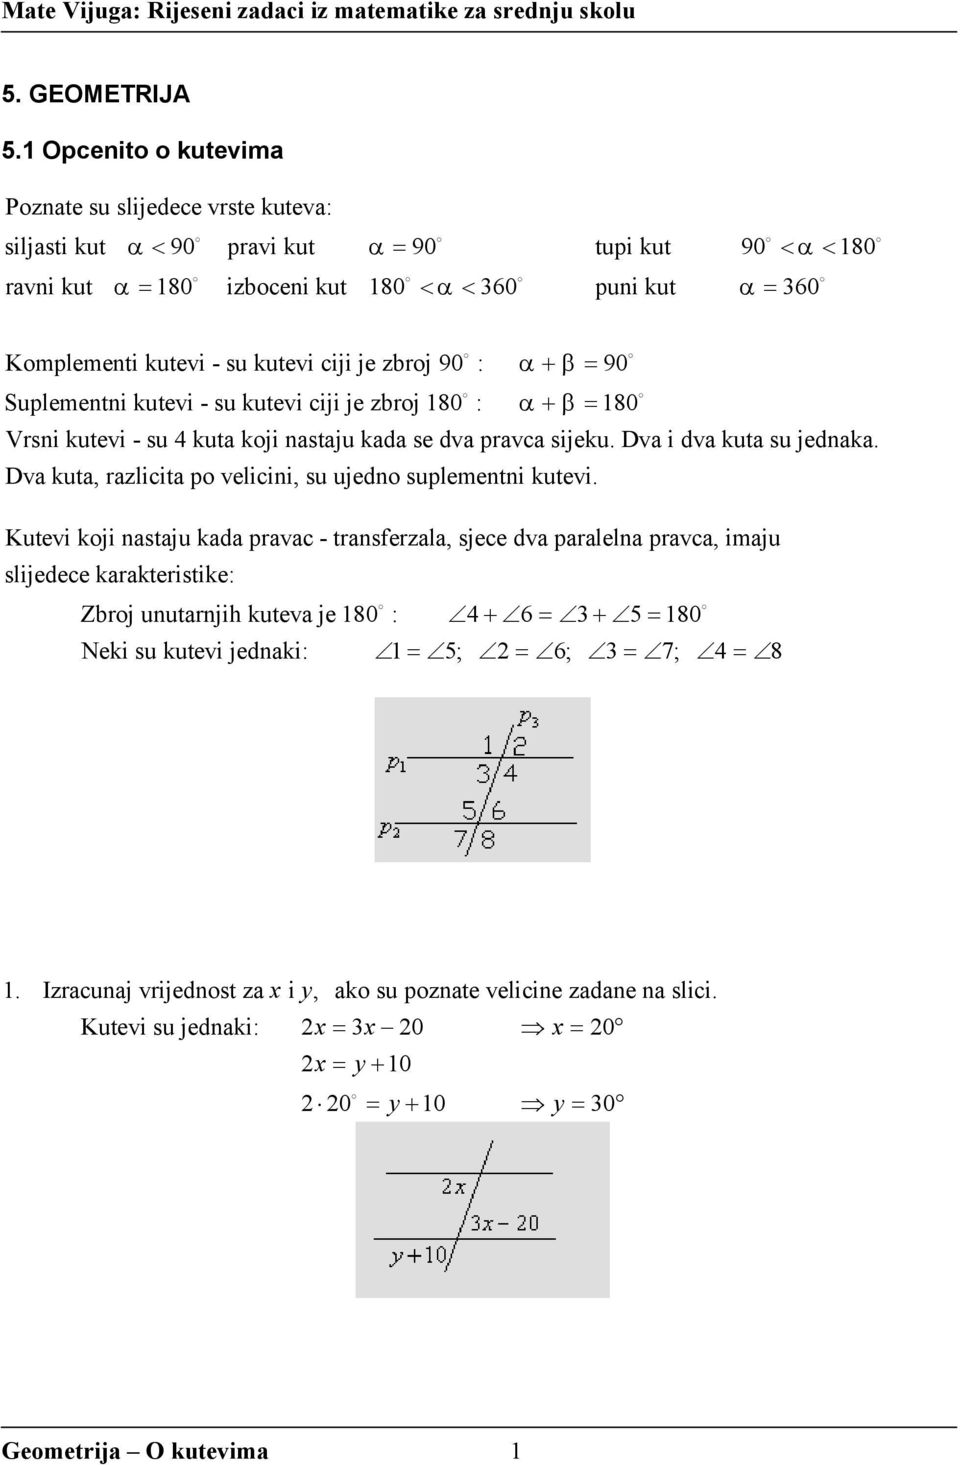 Mate Vijuga: Rijeseni zadaci iz matematike za srednju skolu - PDF ΔΩΡΕΑΝ  Λήψη